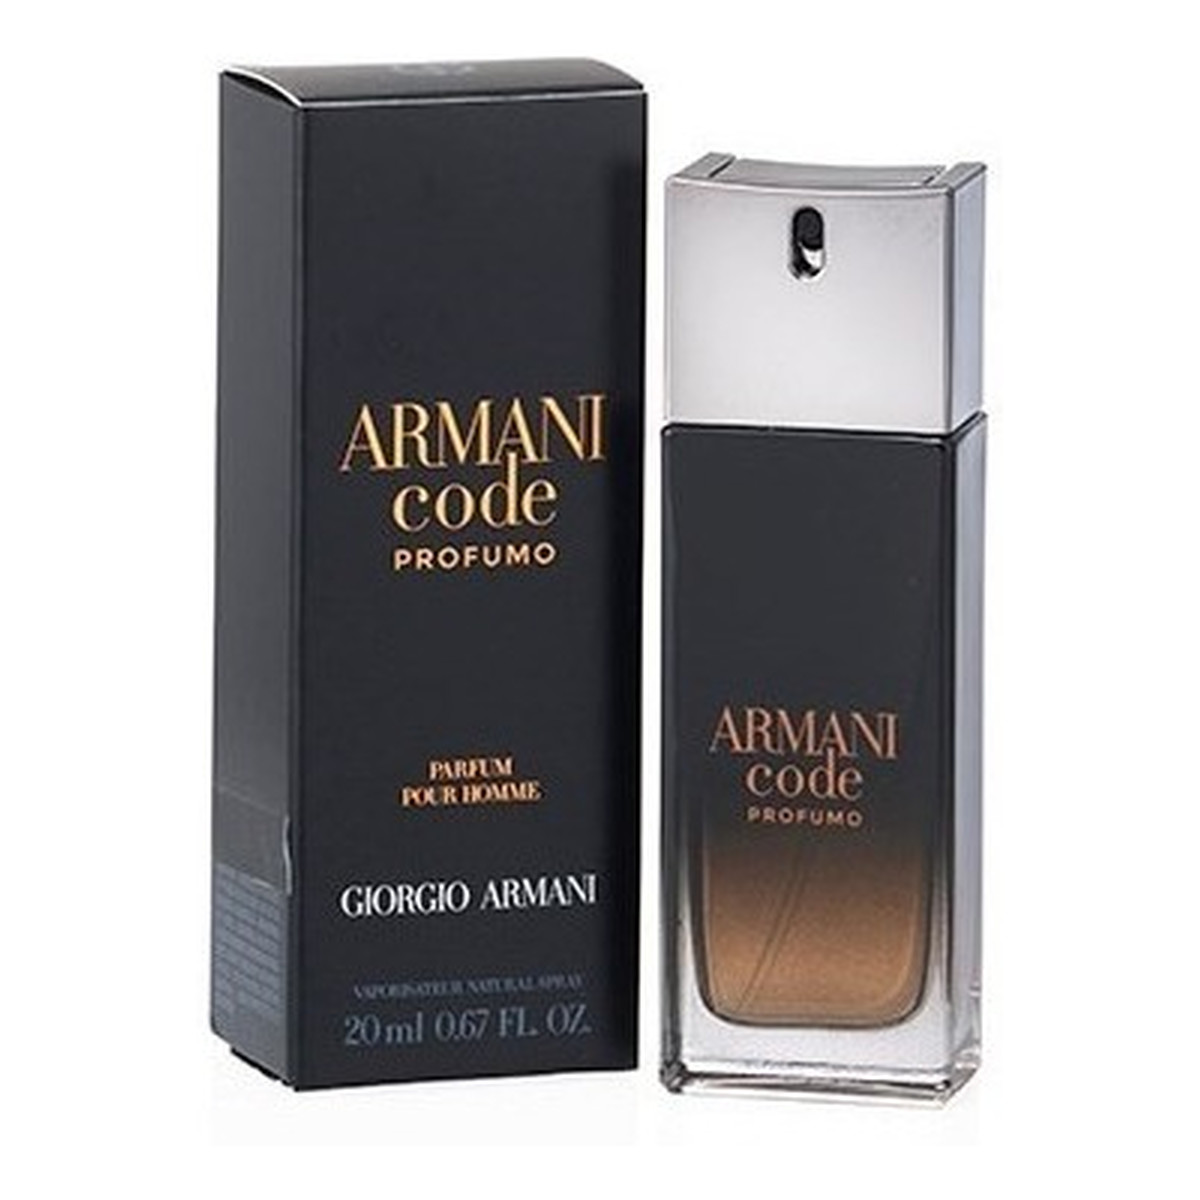 Giorgio Armani Code Pour Homme Profumo Woda perfumowana spray 20ml